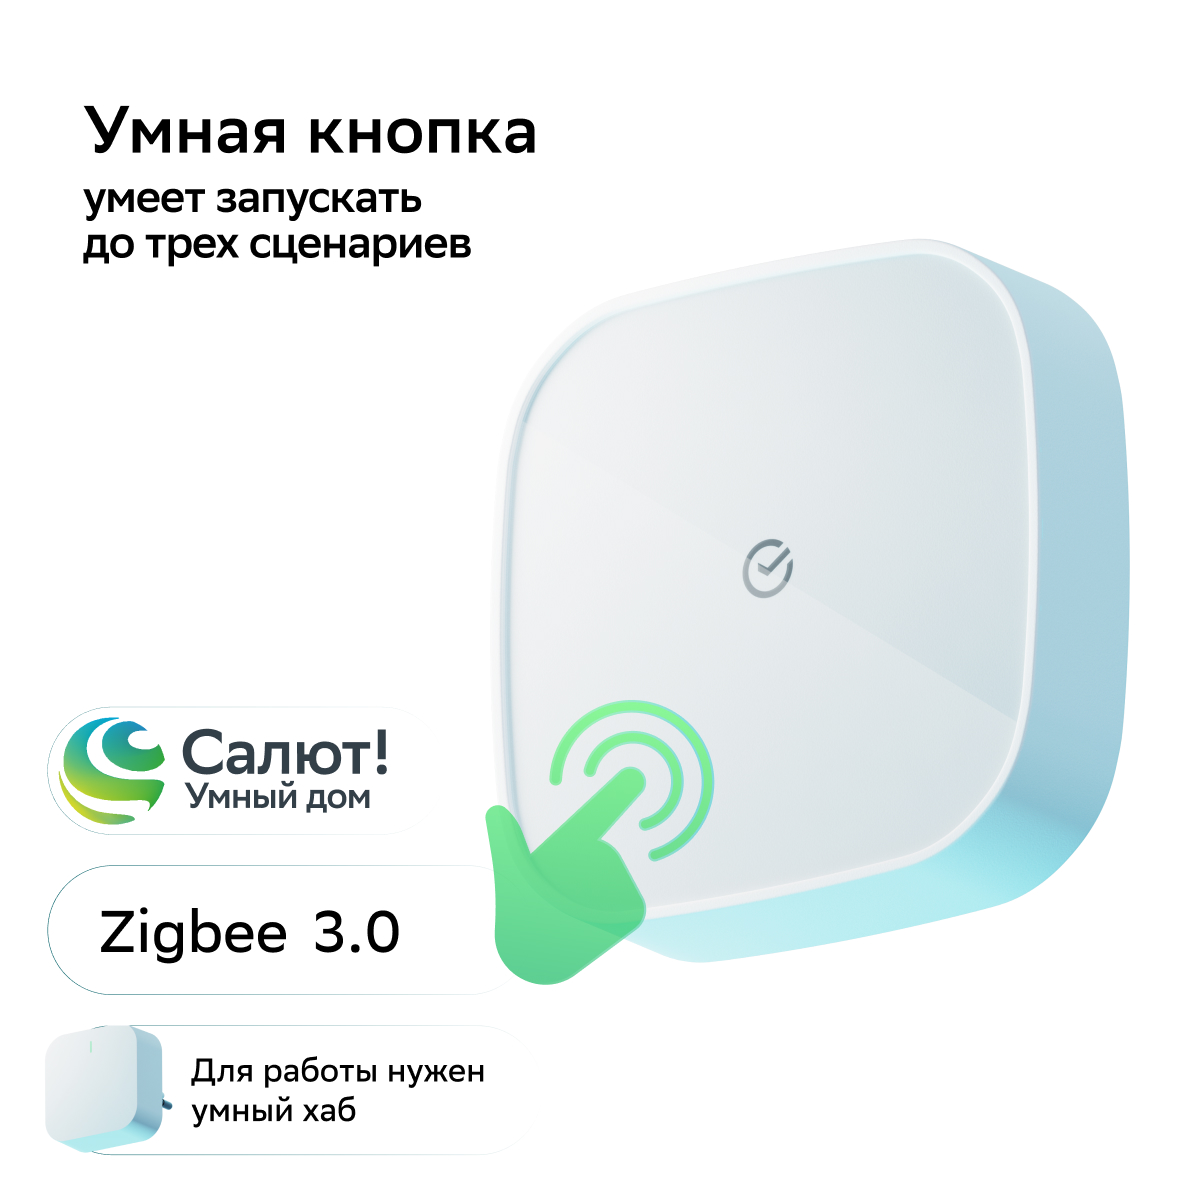 Умная кнопка Sber SBDV-00032, белая ikey умная кнопка для android смартфонов и планшетов